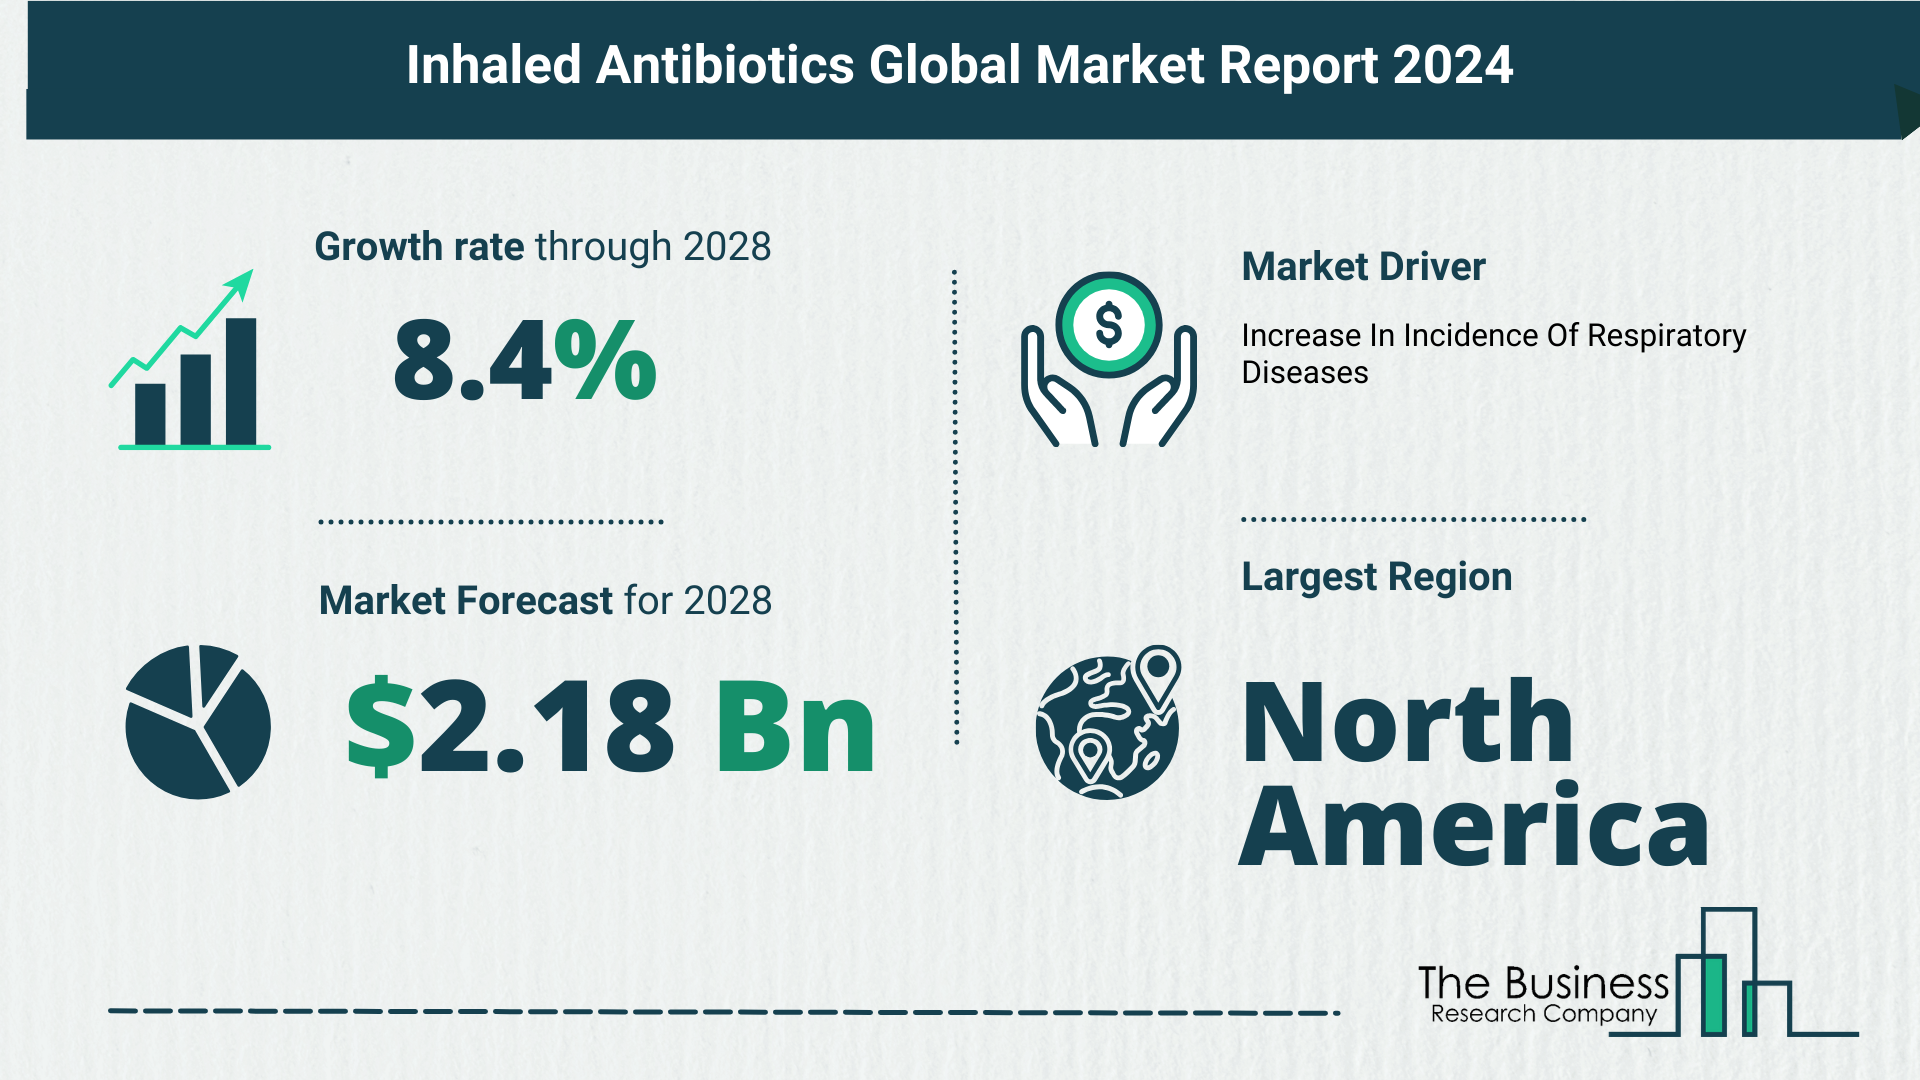 Inhaled Antibiotics Market Forecast 2024: Forecast Market Size, Drivers And Key Segments